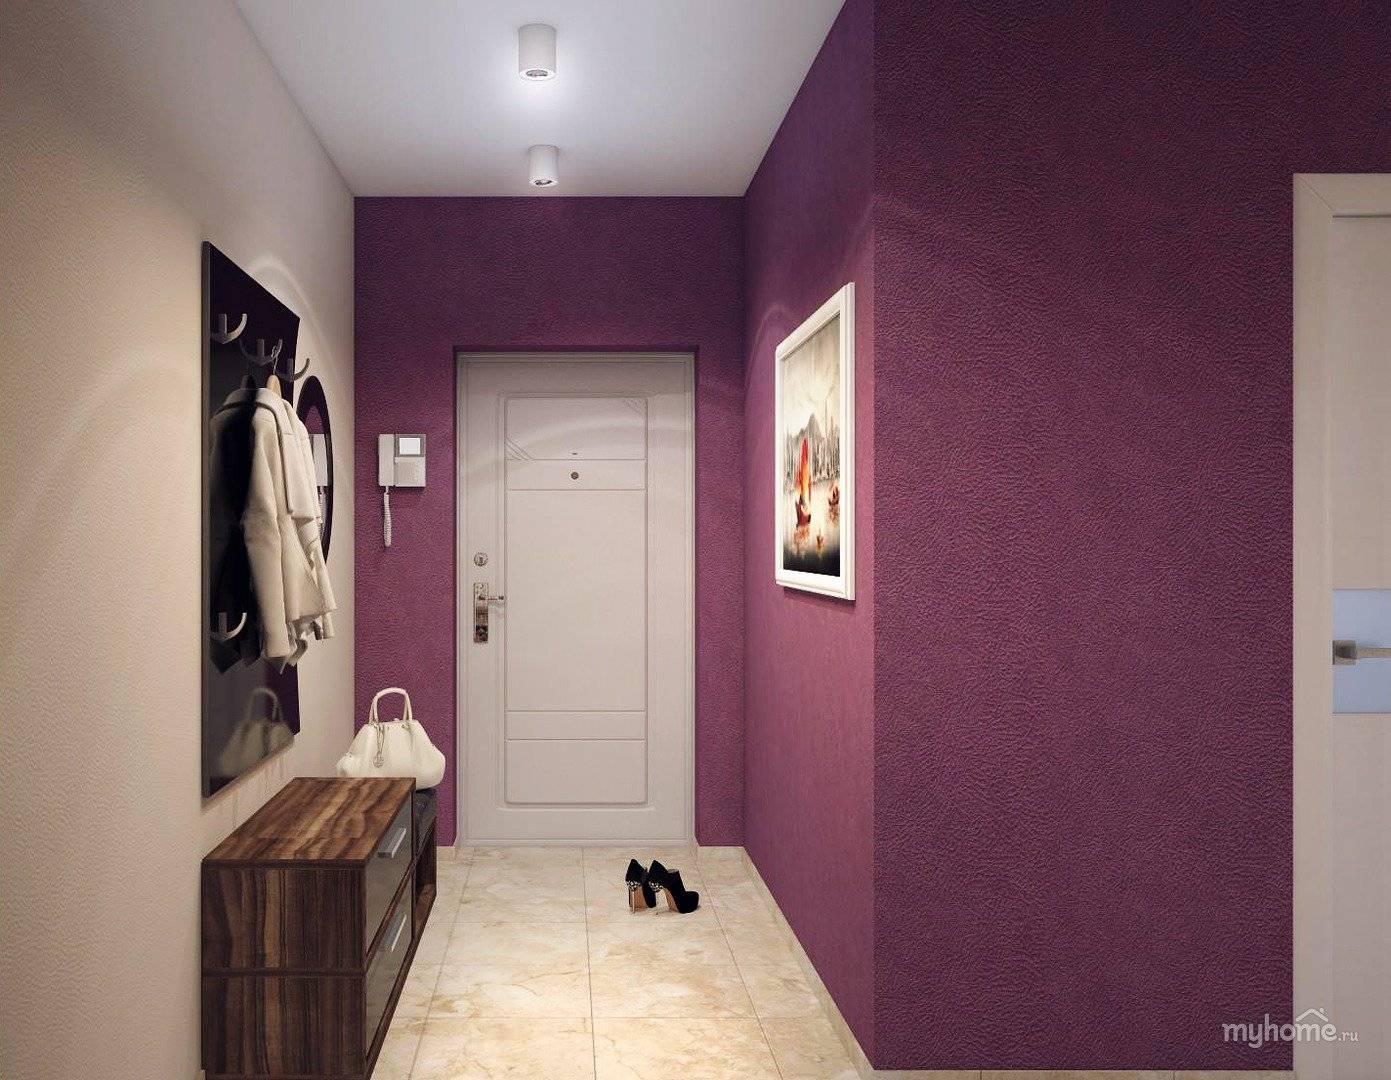 Как выбрать хорошие обои правильно, включая жидкие и под покраску, подходящие по стилю для стен зала, гостиной, прихожей, коридора и комнат в квартире, советы и фото